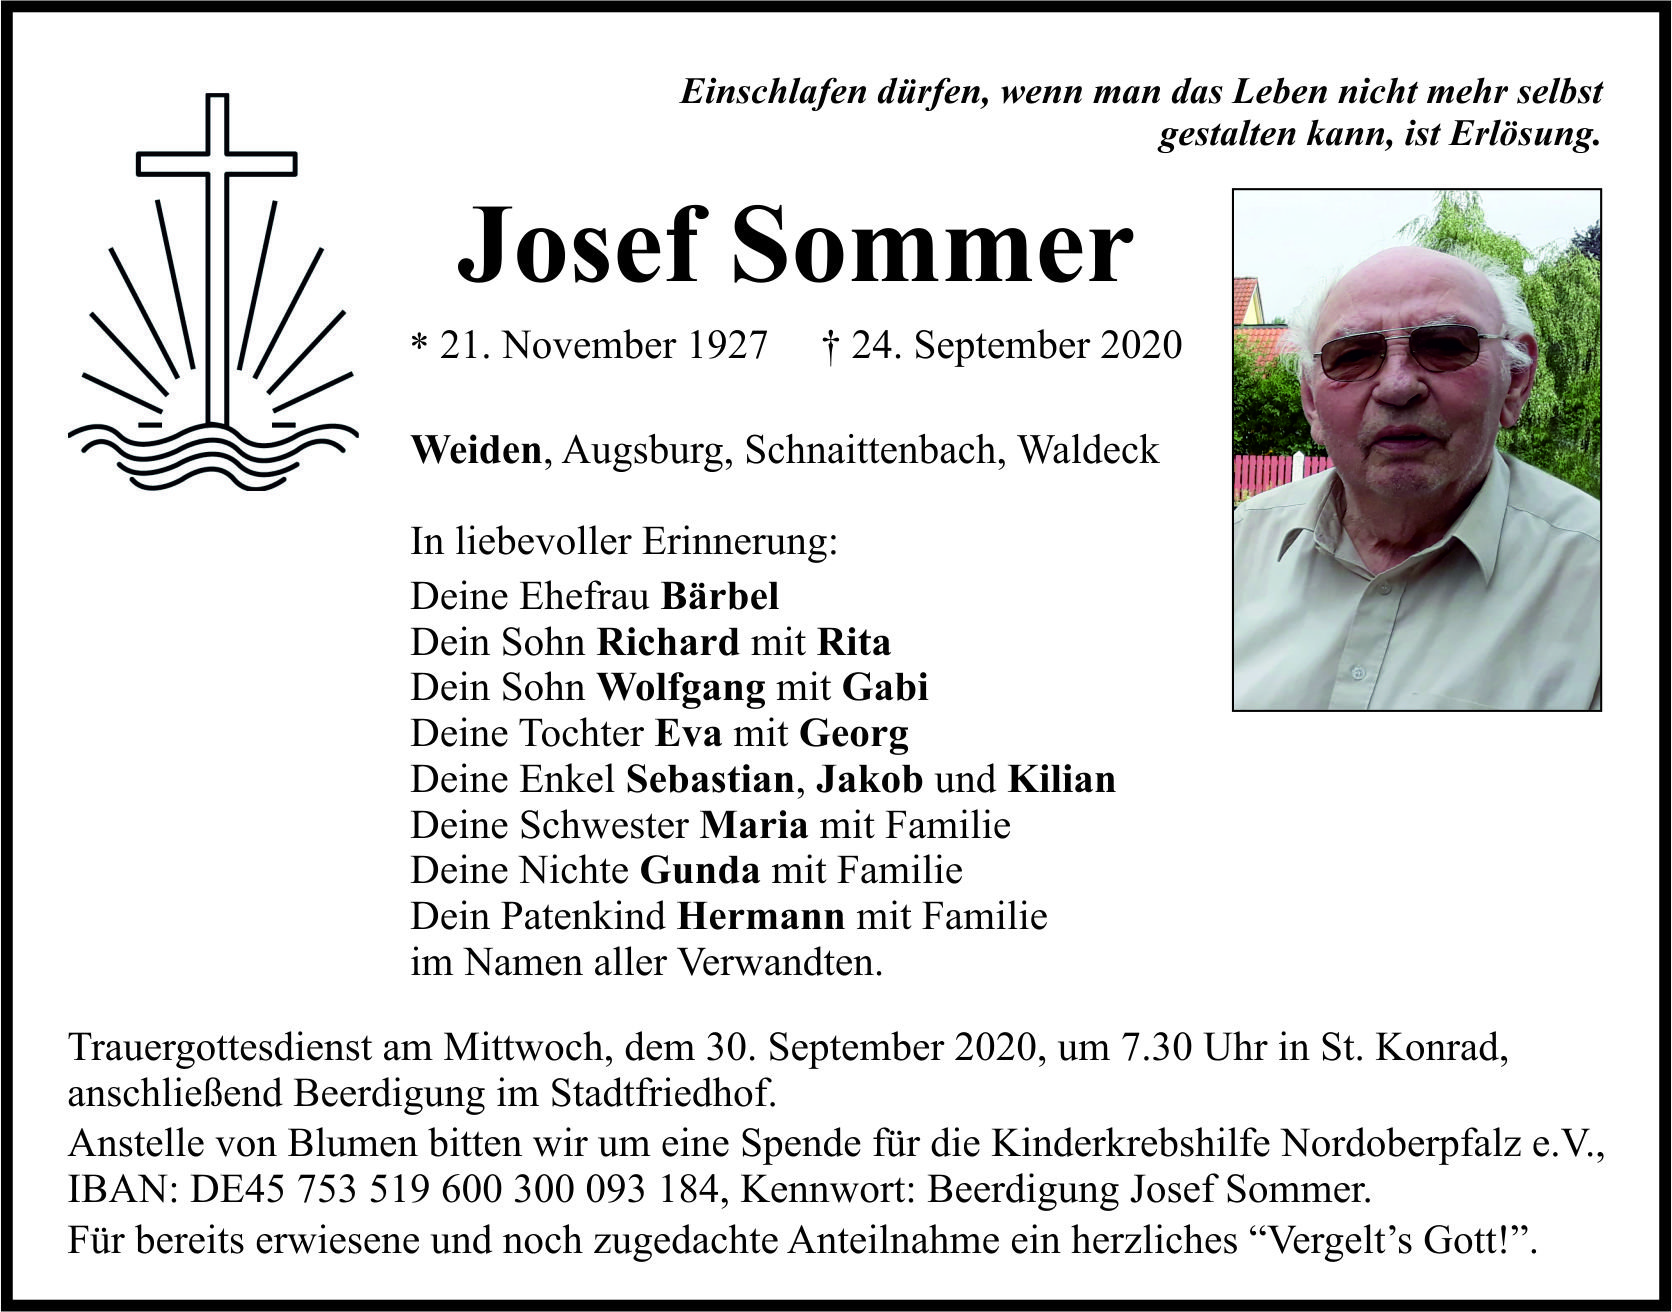 Traueranzeige Josef Sommer, Weiden